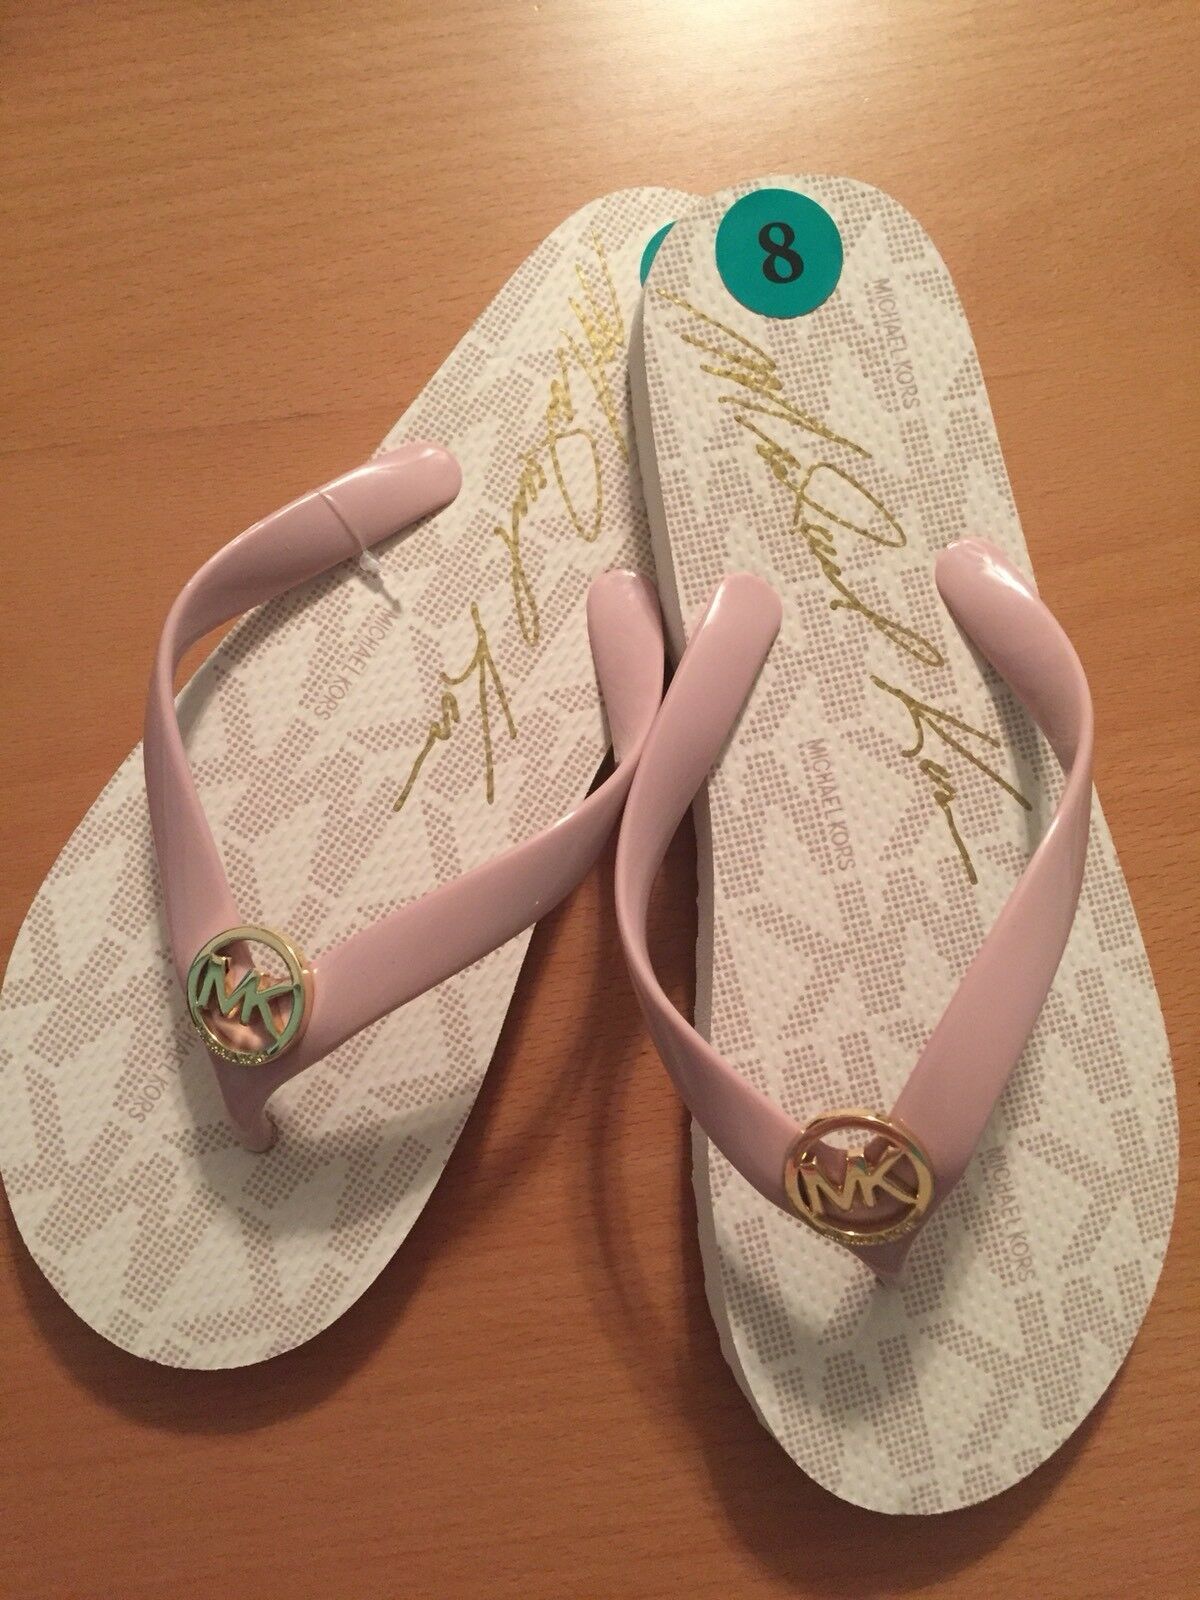 Primary image for Michael Kors Flip Flops Jet Set PVC Logo Women's Designer Sandals NEW Retail $45